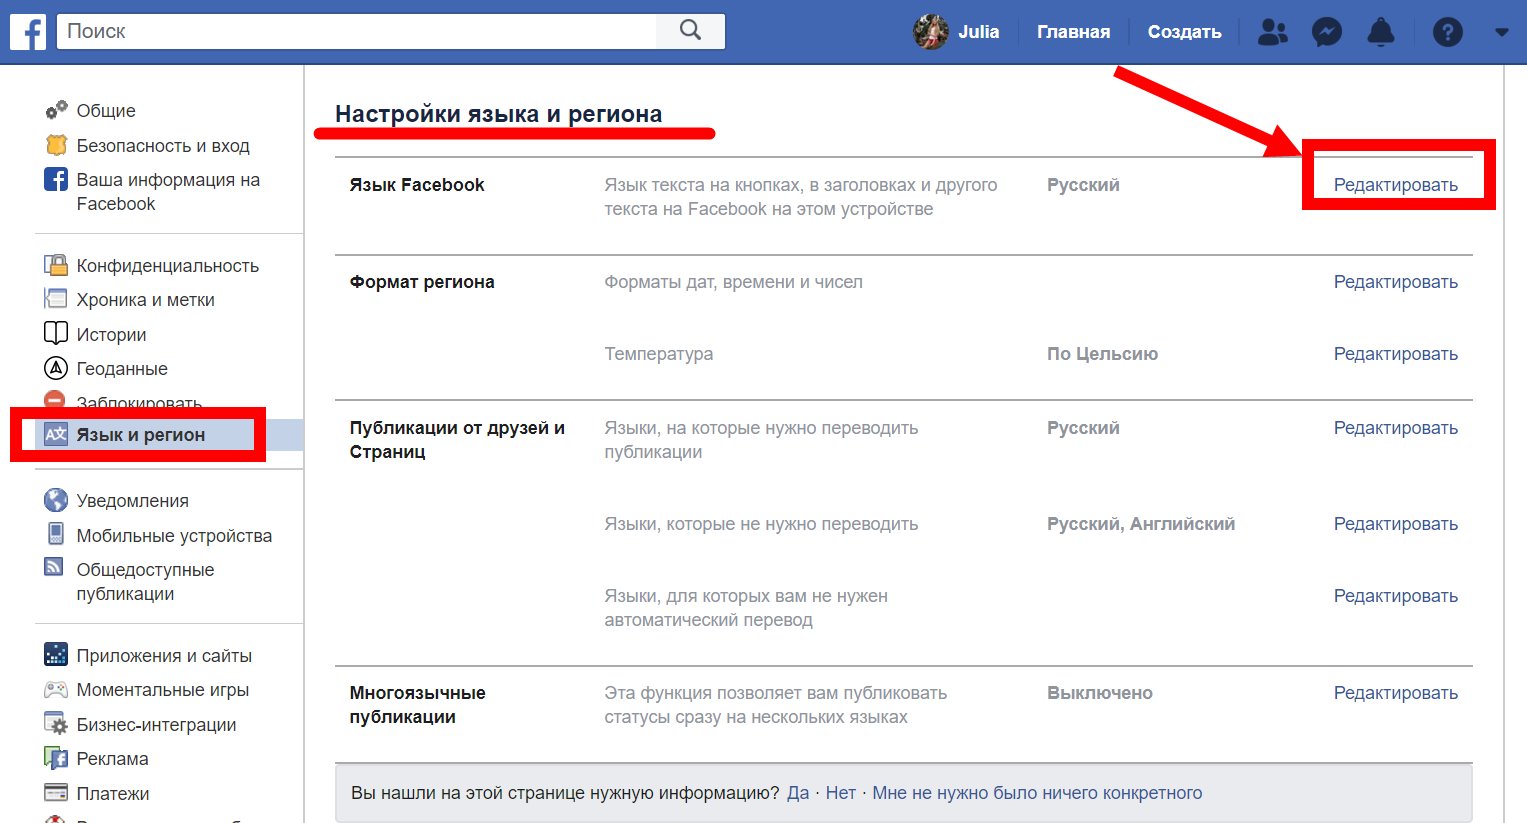 Нужно перевести страницу. Перевести Фейсбук на русский. Как сделать Фейсбук на русском языке. Facebook публикации. Русский язык Facebook.